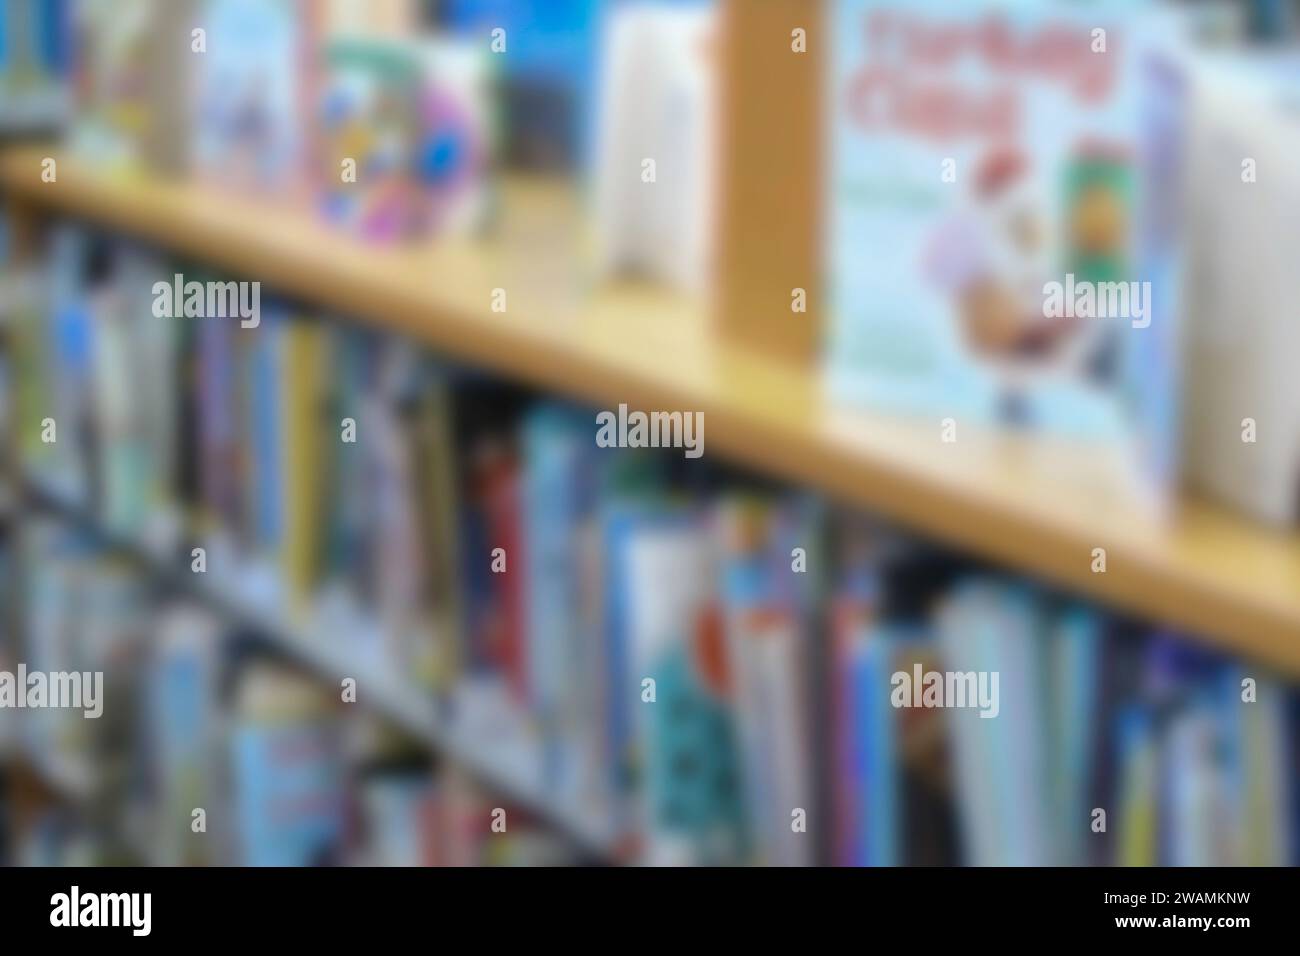 Libreria sfocata astratta con libri illustrati per bambini. Foto Stock